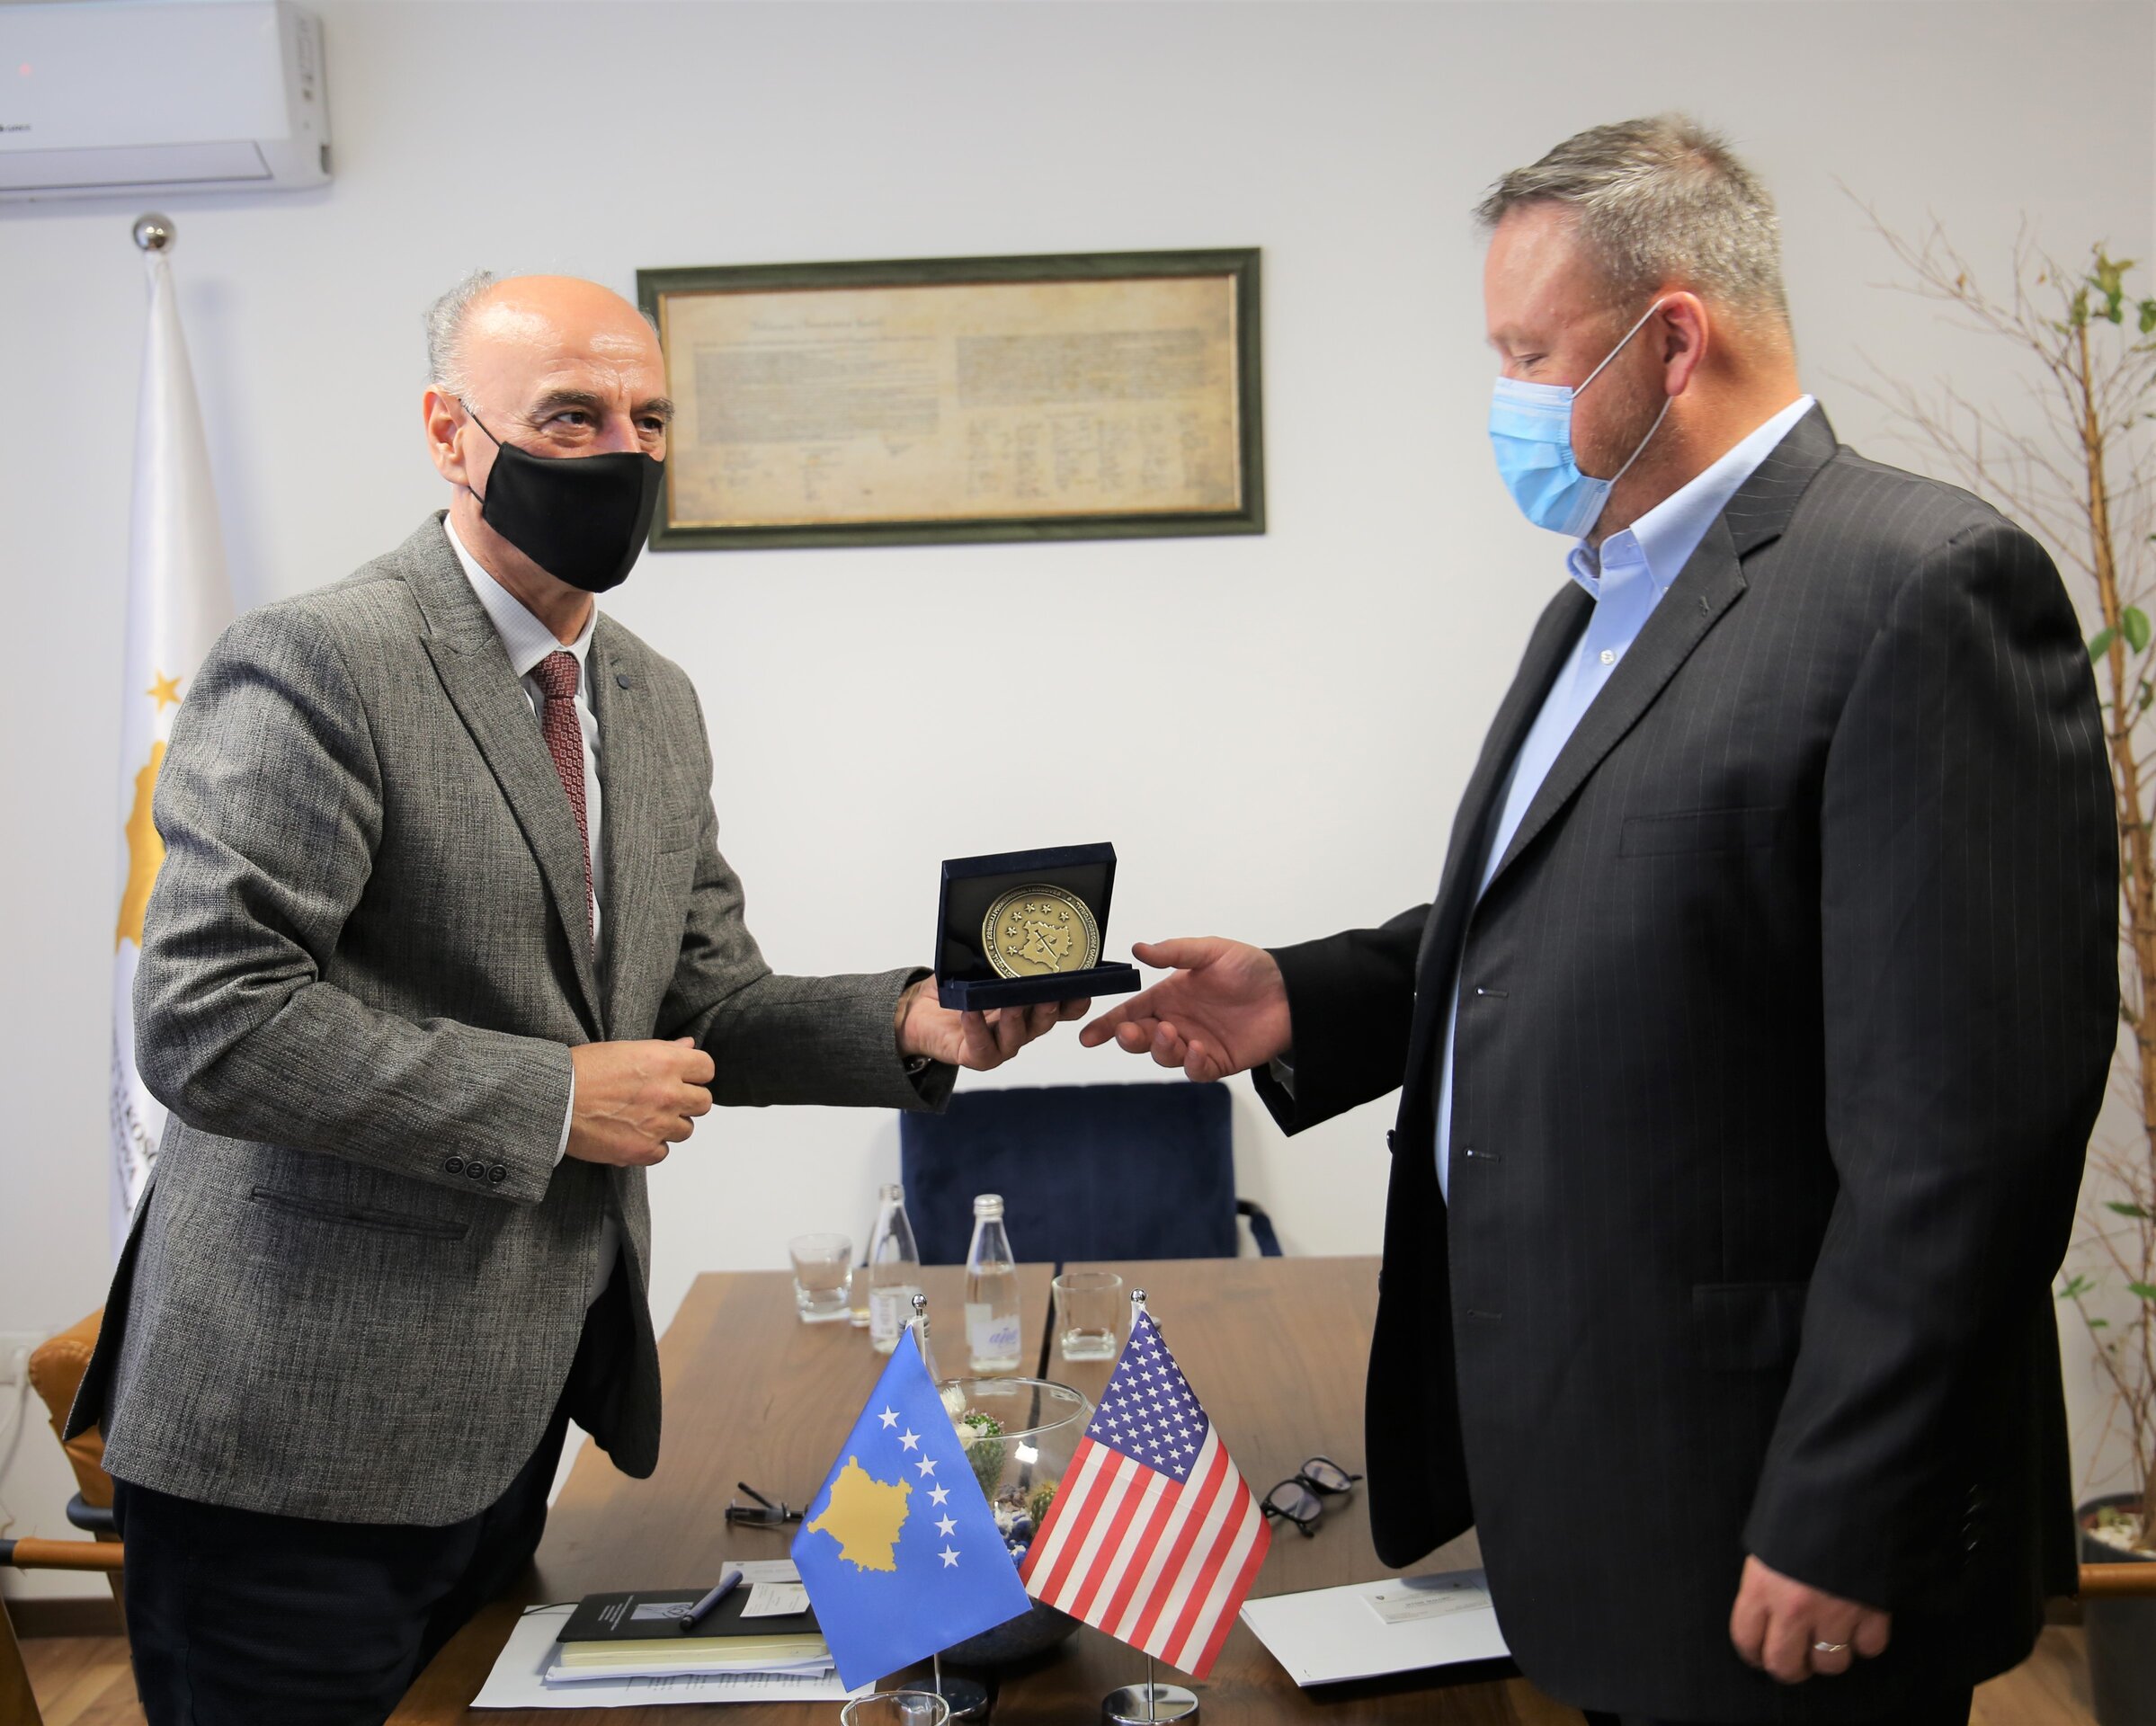 KPK dhe Ambasada e SHBA-së diskutojnë për projektet e reja të digjitalizimit të sistemit prokurorial në Kosovë